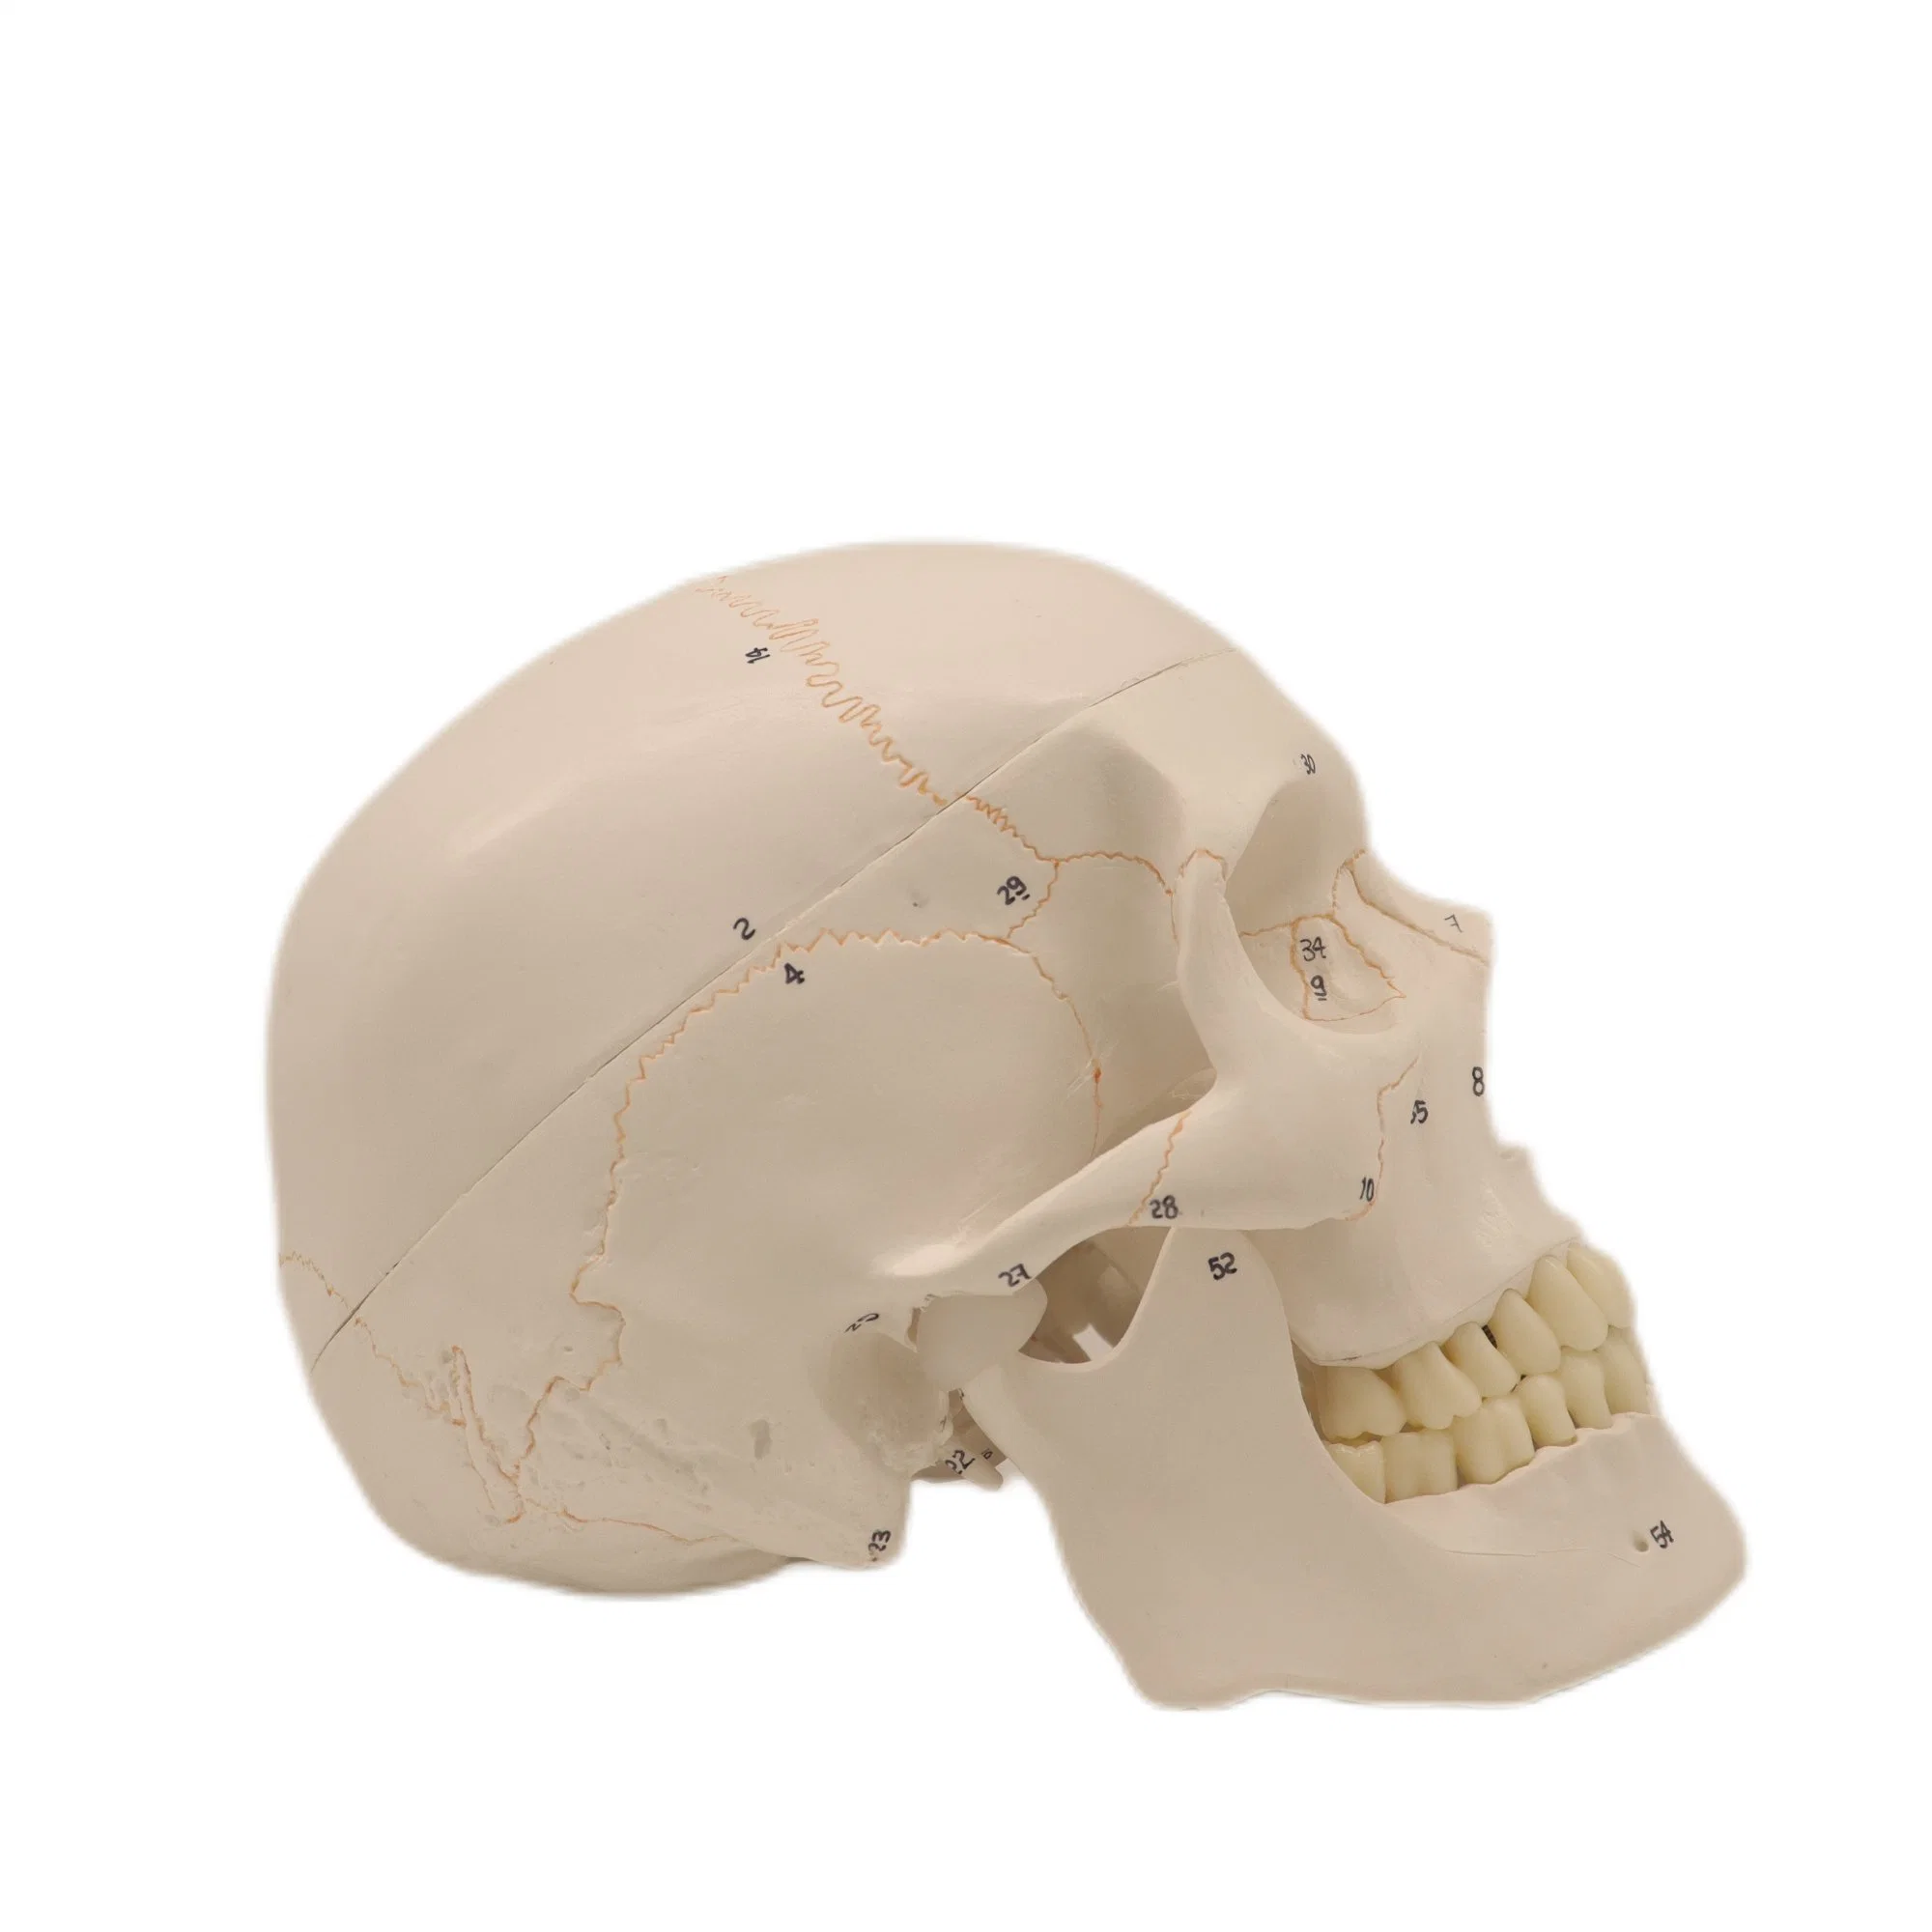 Good Price Teaching Demonstration Skeleton Skull Kit 22 Individual Bones Human Models with Natural Size